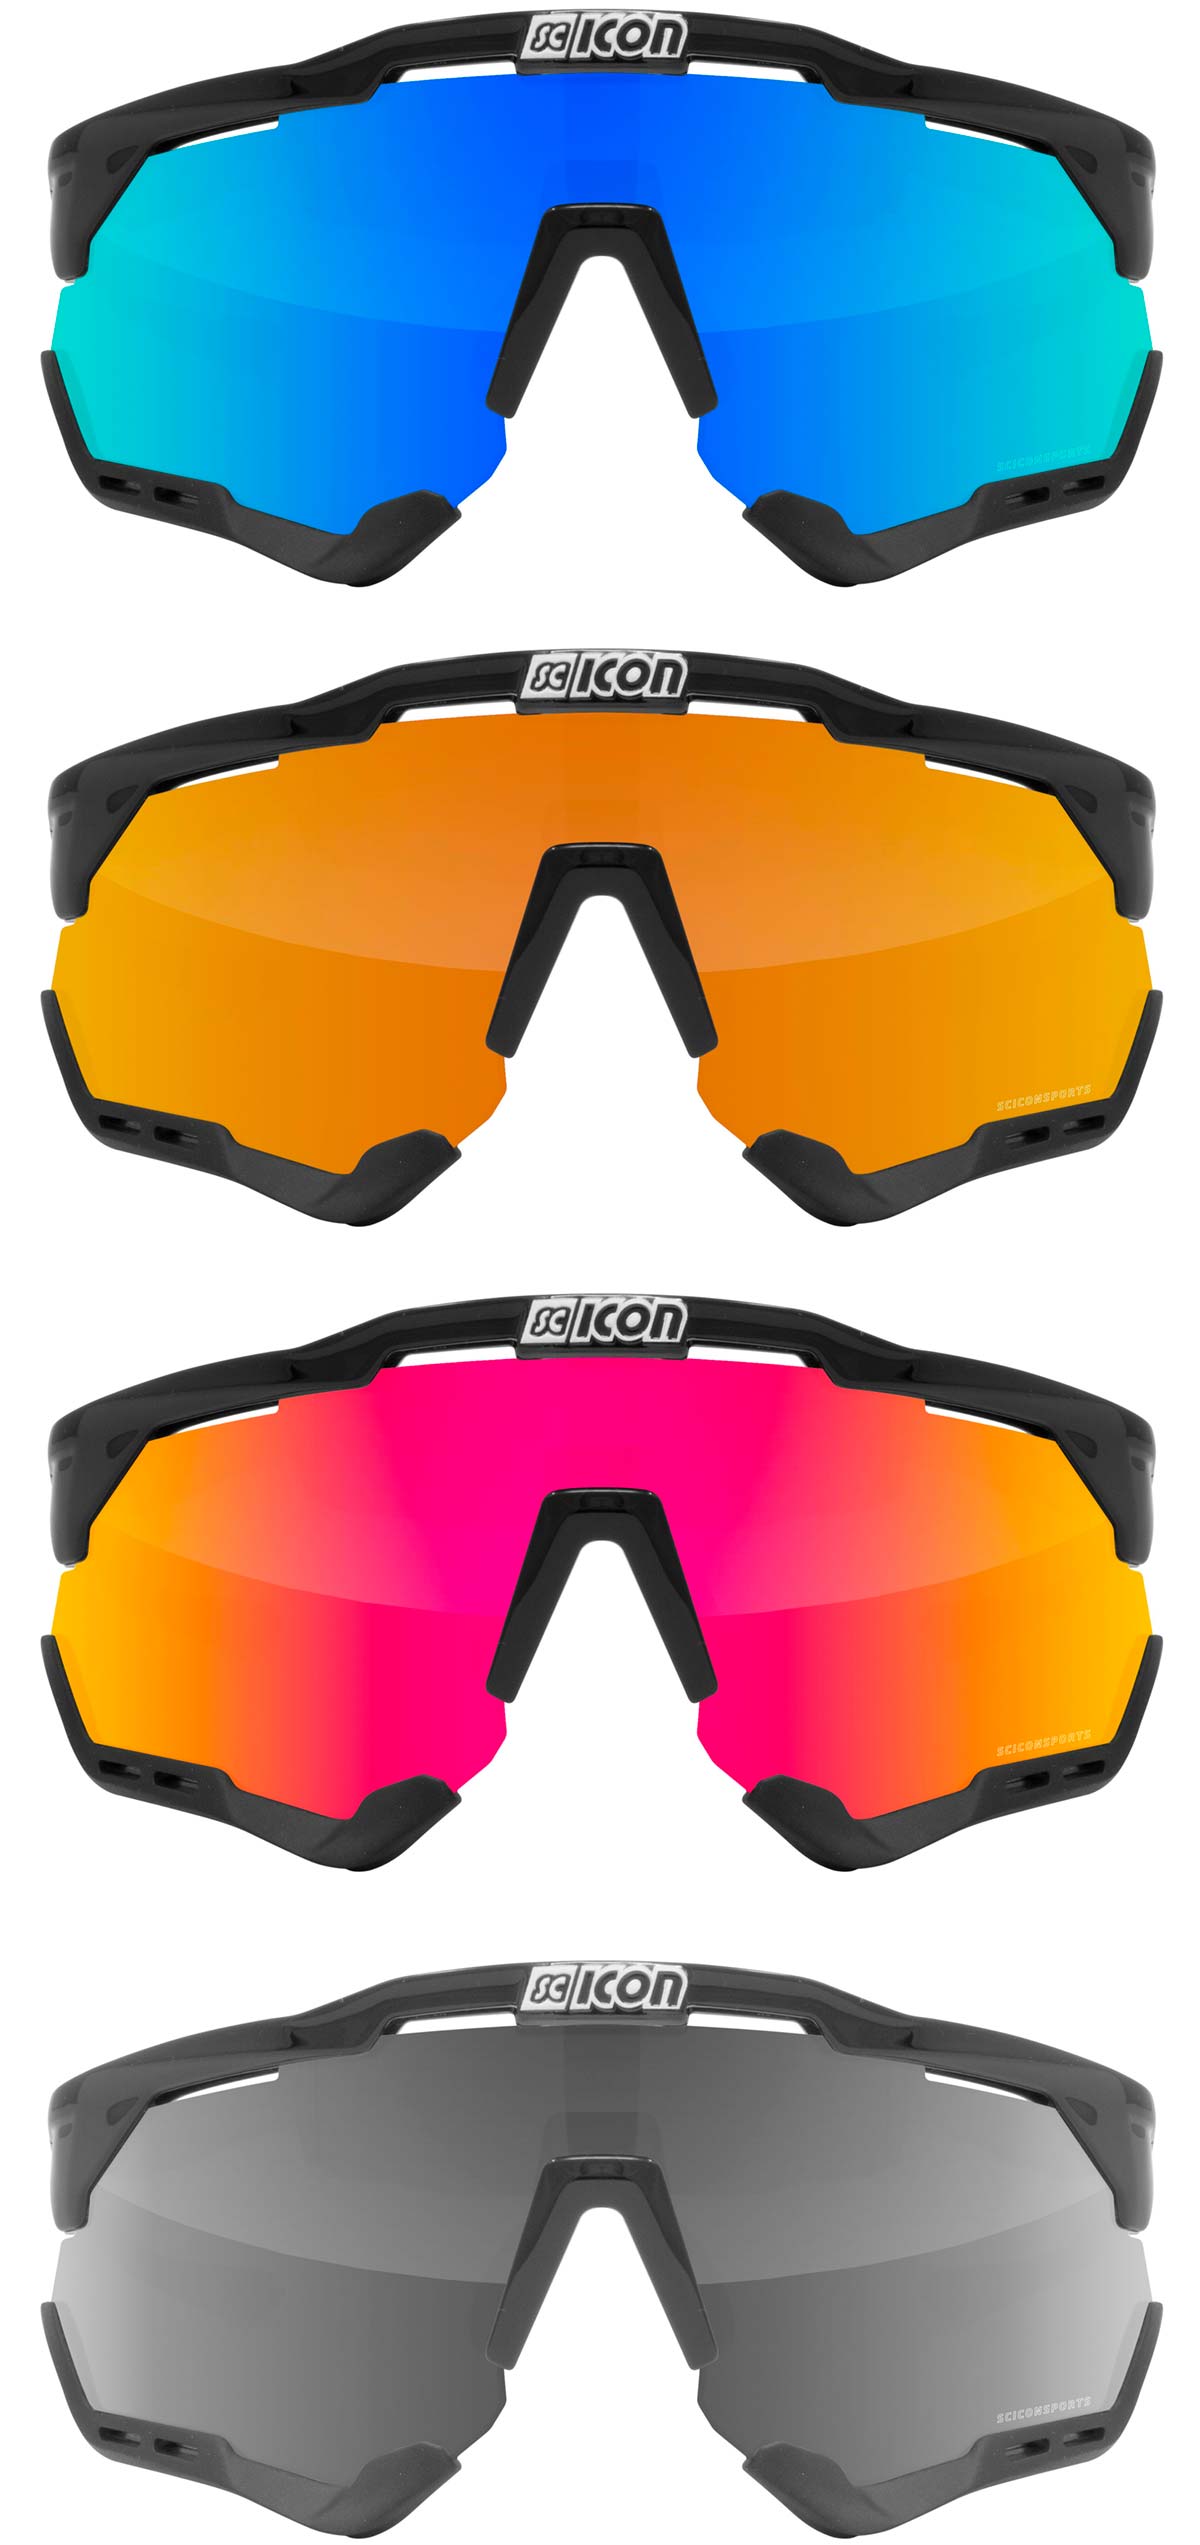 En TodoMountainBike: Scicon presenta las Aerowing y Aeroshade, sus nuevas gafas para ciclistas